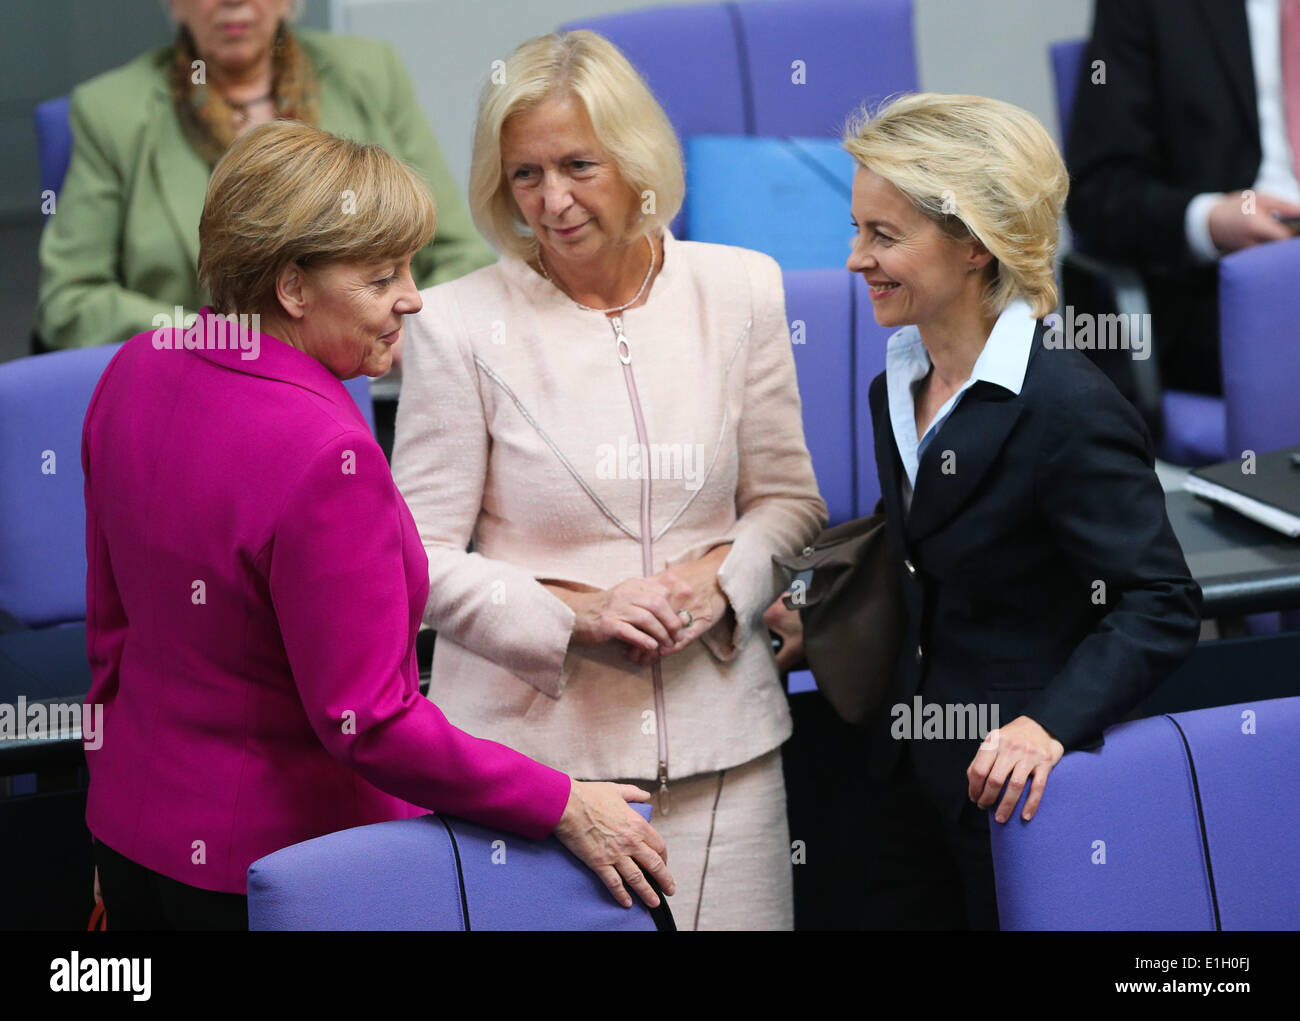 Berlino, Germania. Il 4 giugno, 2014. (L-R) il Cancelliere tedesco Angela Merkel, tedesco dell'istruzione e della ricerca Il Ministro Johanna Wanka tedesco e il ministro della Difesa, Ursula von der Leyen frequentare una sessione di incontro presso il Bundestag, la camera bassa del Parlamento, a Berlino, Germania, il 4 giugno 2014. Il Vertice del G7 impostato a Bruxelles per il giugno 4-5 si concentrerà sulla situazione in Ucraina, i legami con la Russia, economia globale e la sicurezza energetica, secondo l' agenda preliminare presentato dall'Unione europea (UE). Credito: Zhang ventola/Xinhua/Alamy Live News Foto Stock